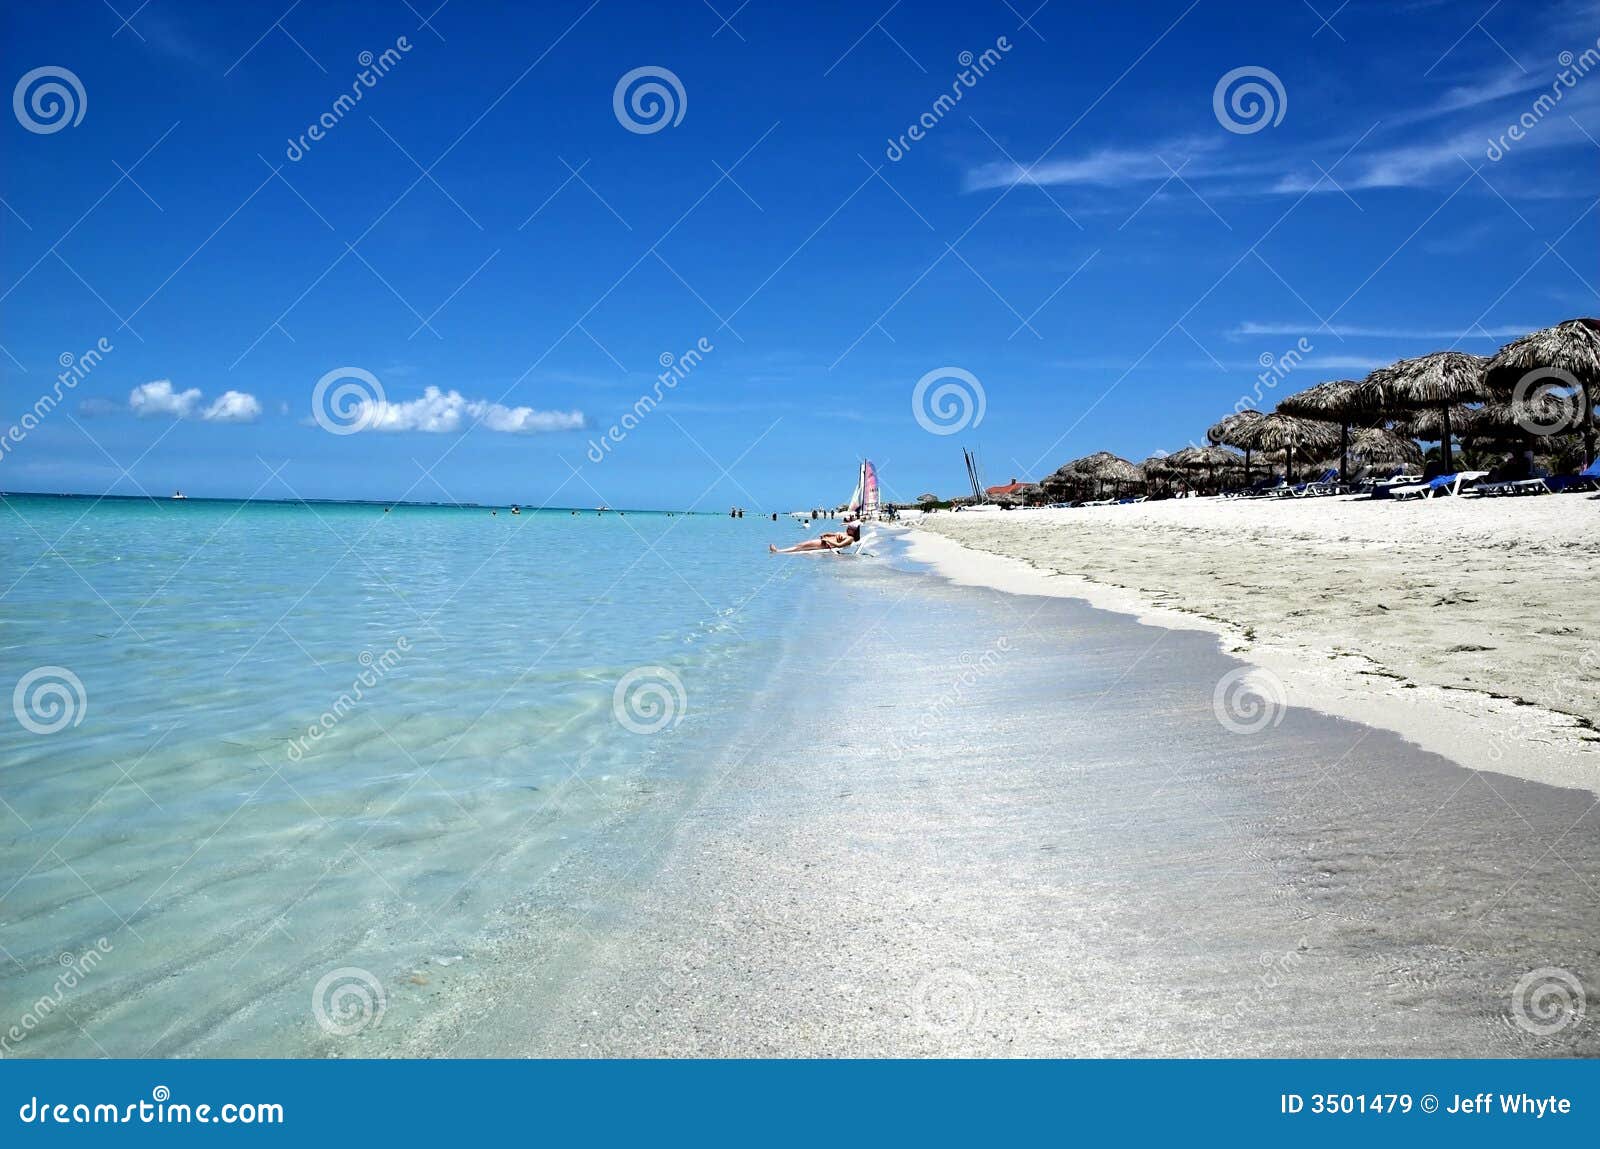 varadero beaches, cuba